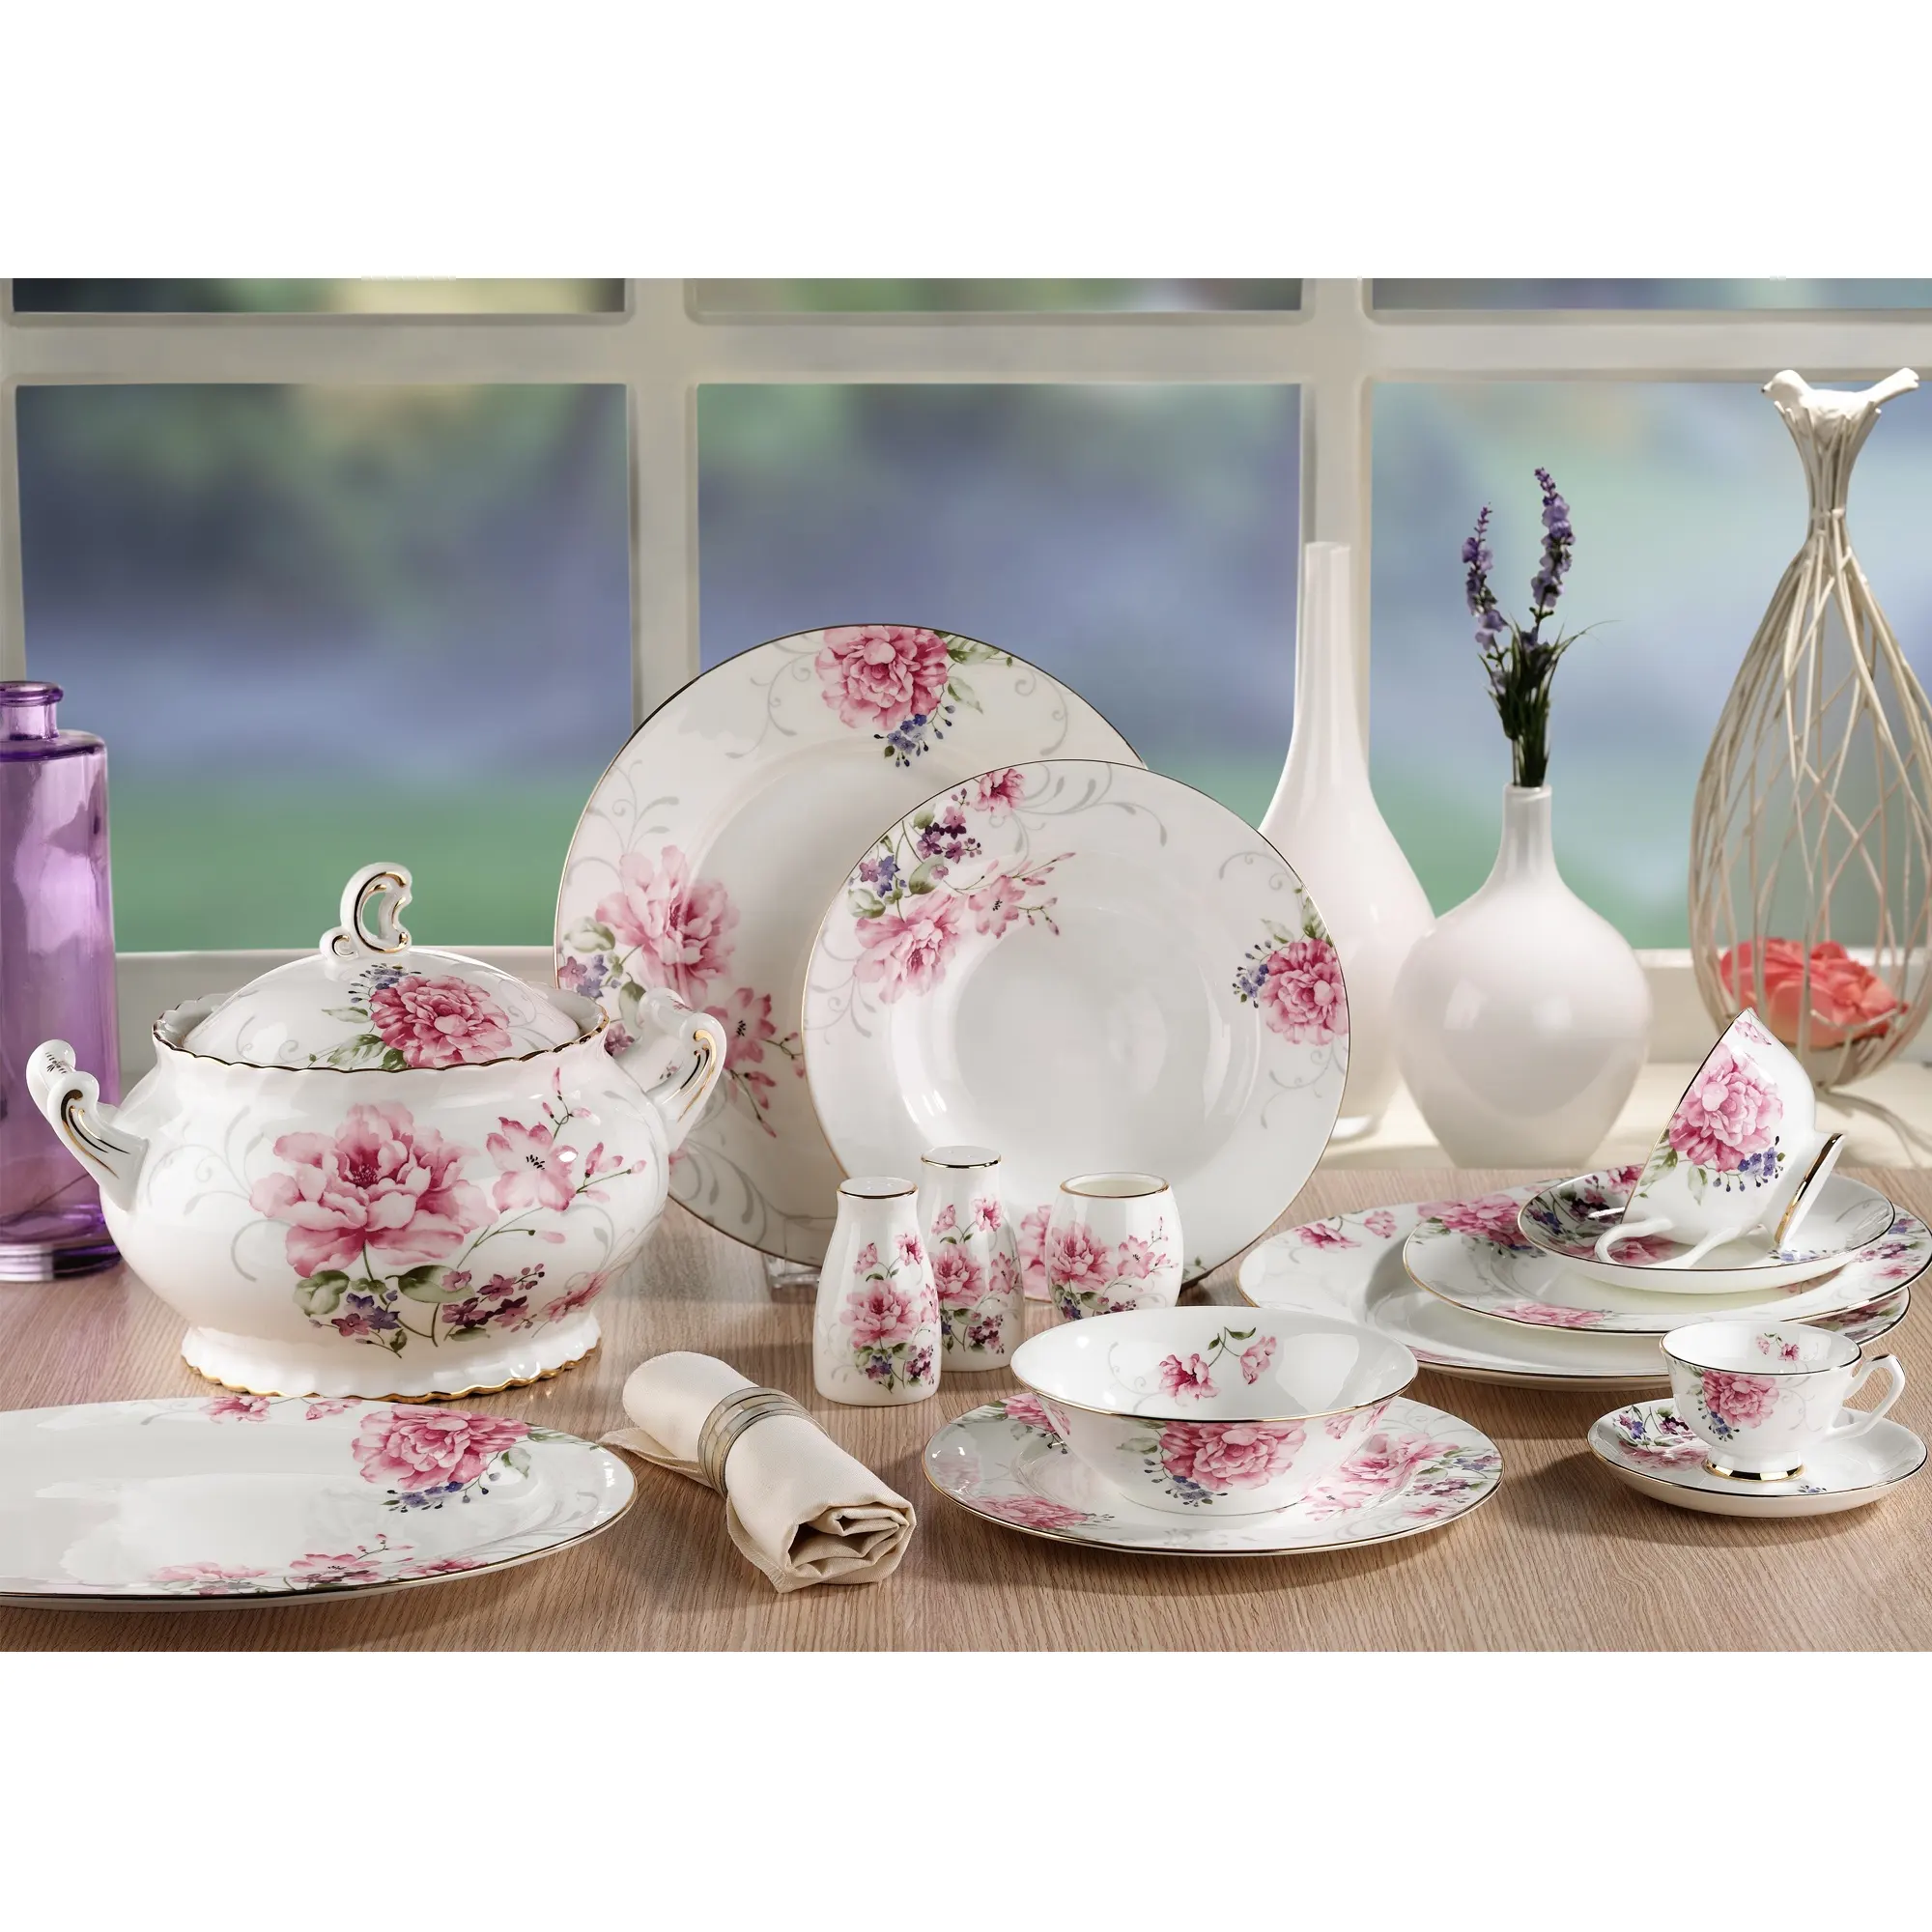 ชุดจานชามลายดอกไม้สีชมพูสไตล์ตุรกี,ชุดเครื่องใช้บนโต๊ะอาหารชุดรับประทานอาหารทรงสี่เหลี่ยมทรงกลมสไตล์จีนโบน